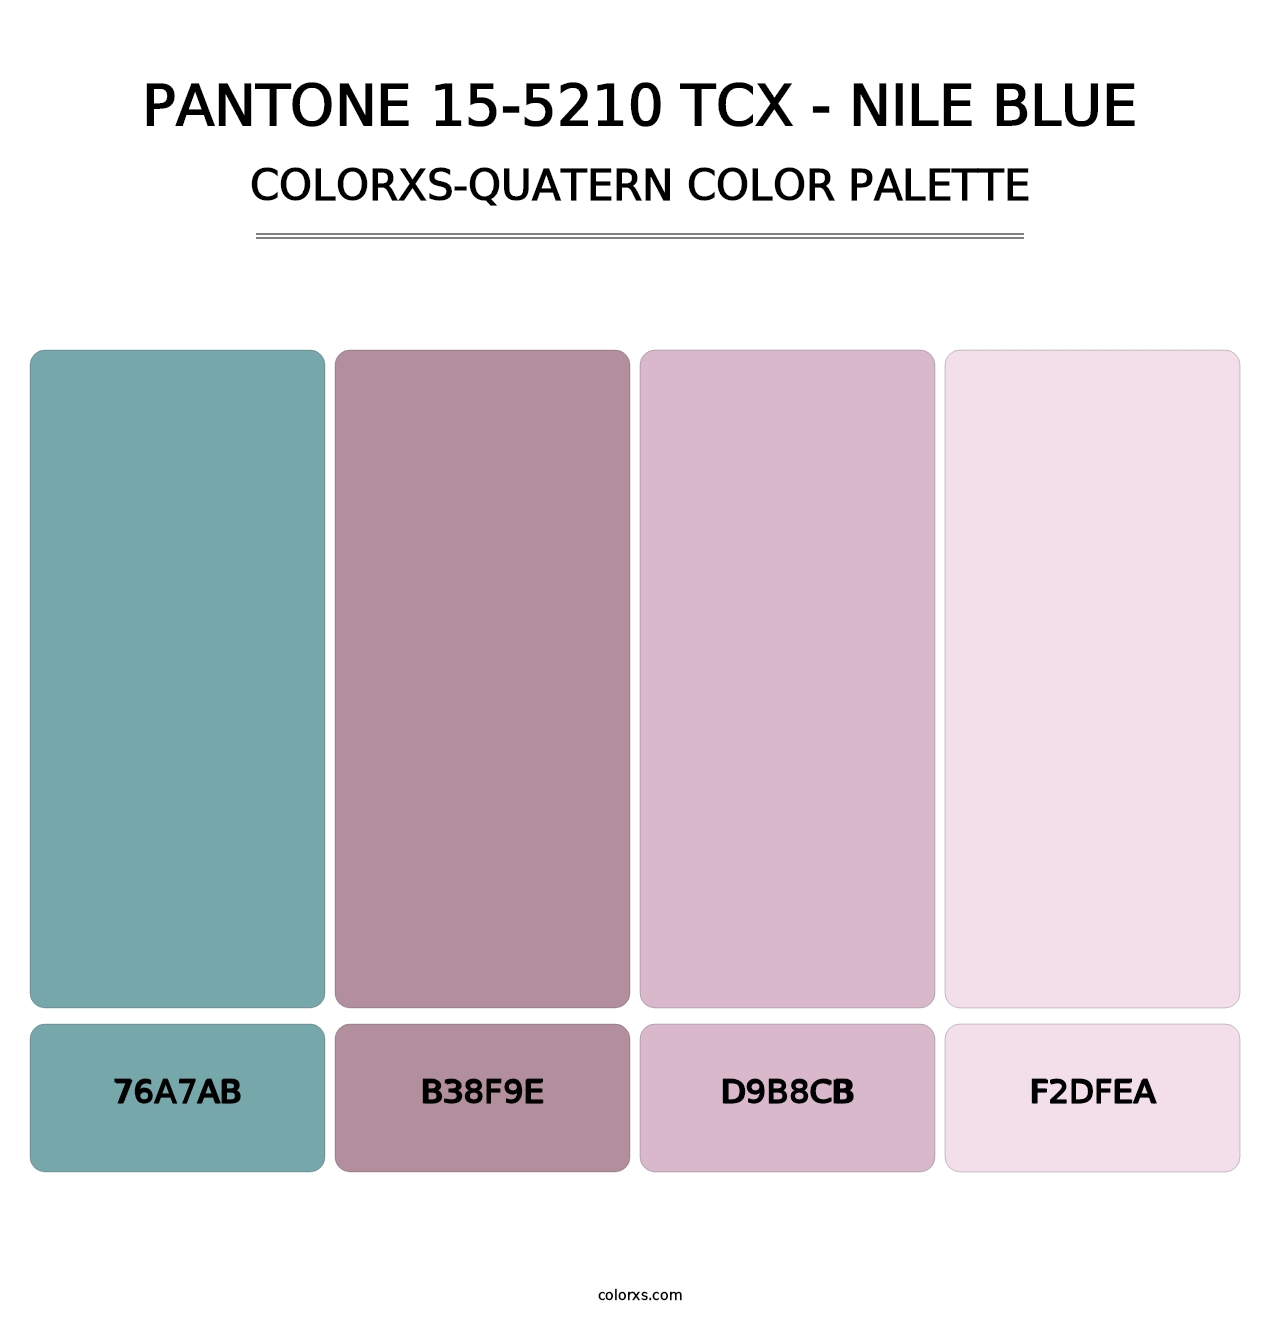 PANTONE 15-5210 TCX - Nile Blue - Colorxs Quatern Palette